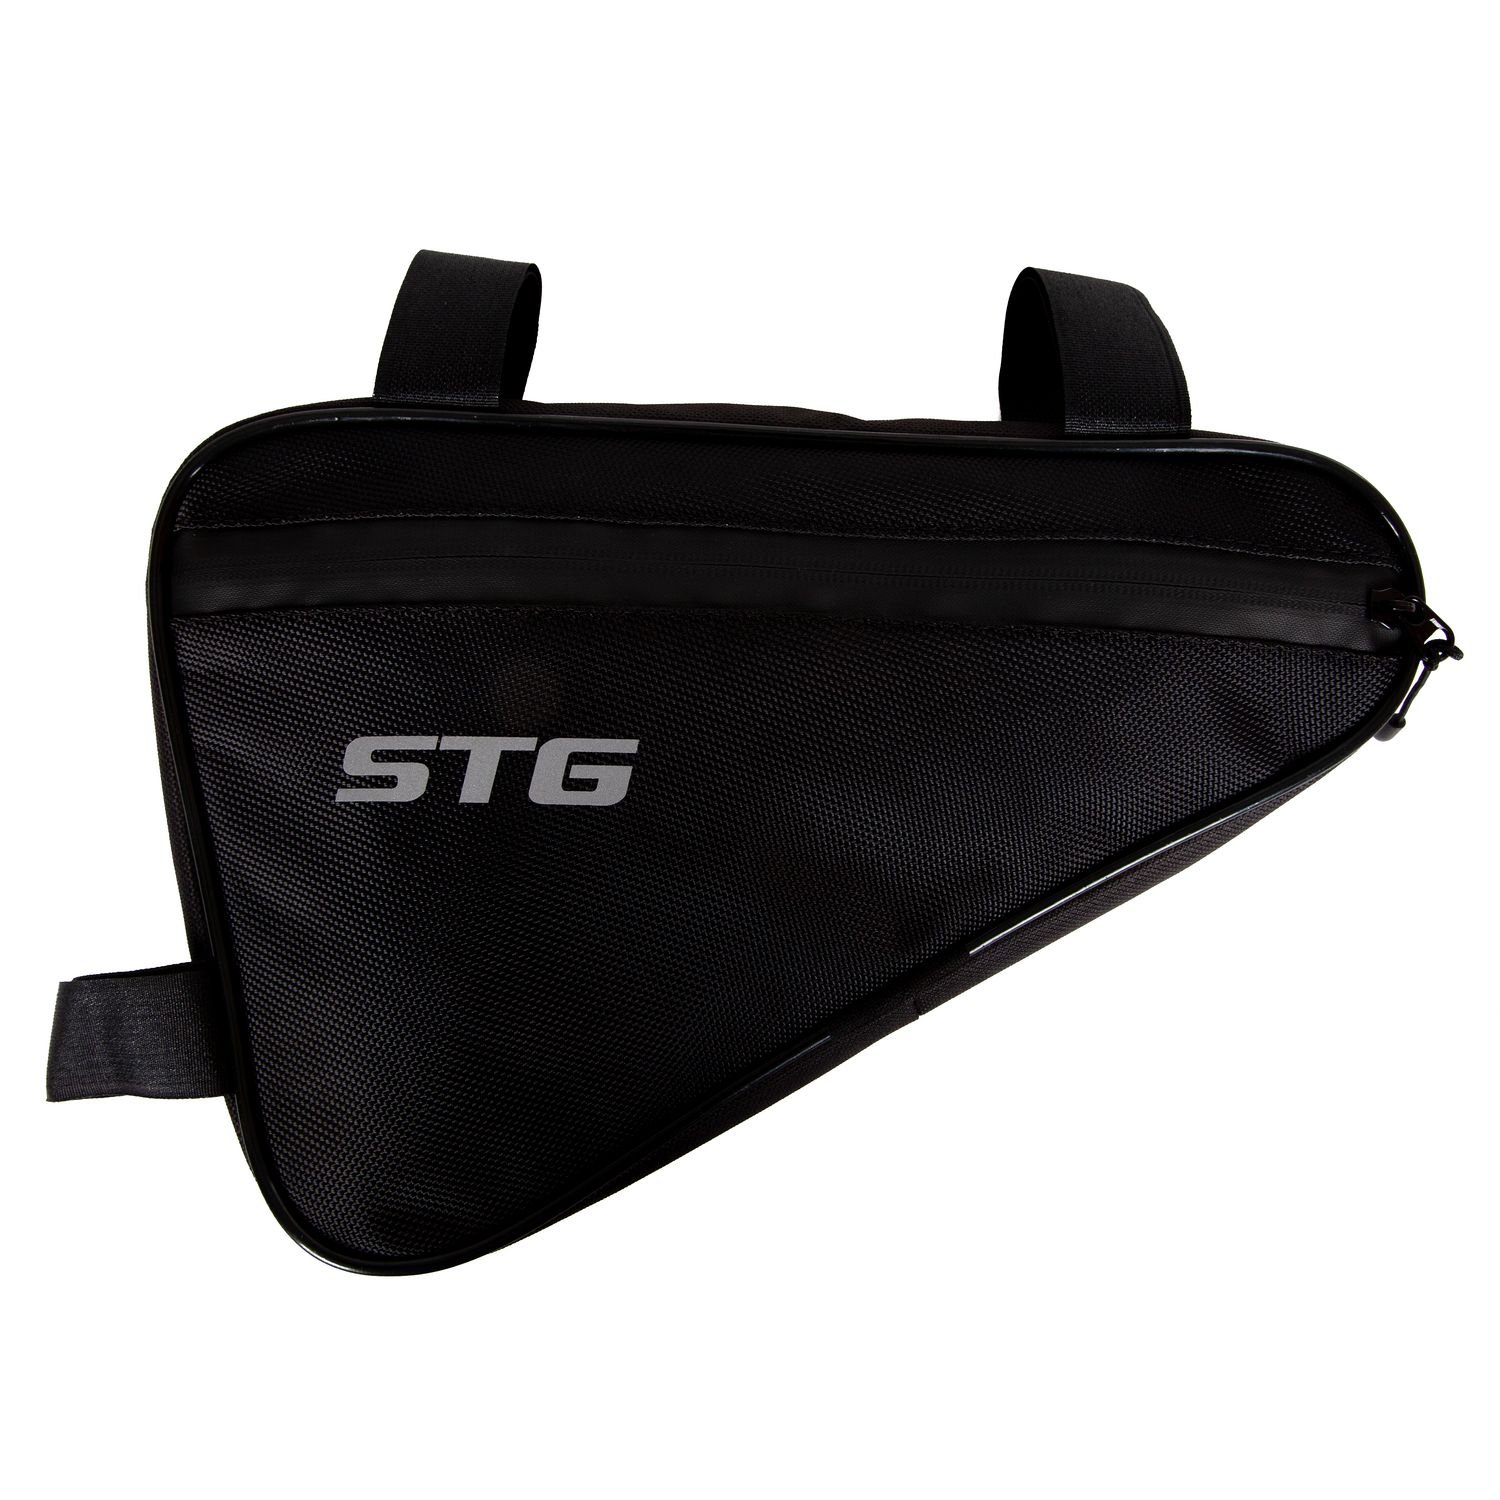 Велосумка STG 555-532, под раму, влагозащищенная, 31х20х5 см, 2.5 л, черный, Х108350 купить на ЖДБЗ.ру - фотография № 2